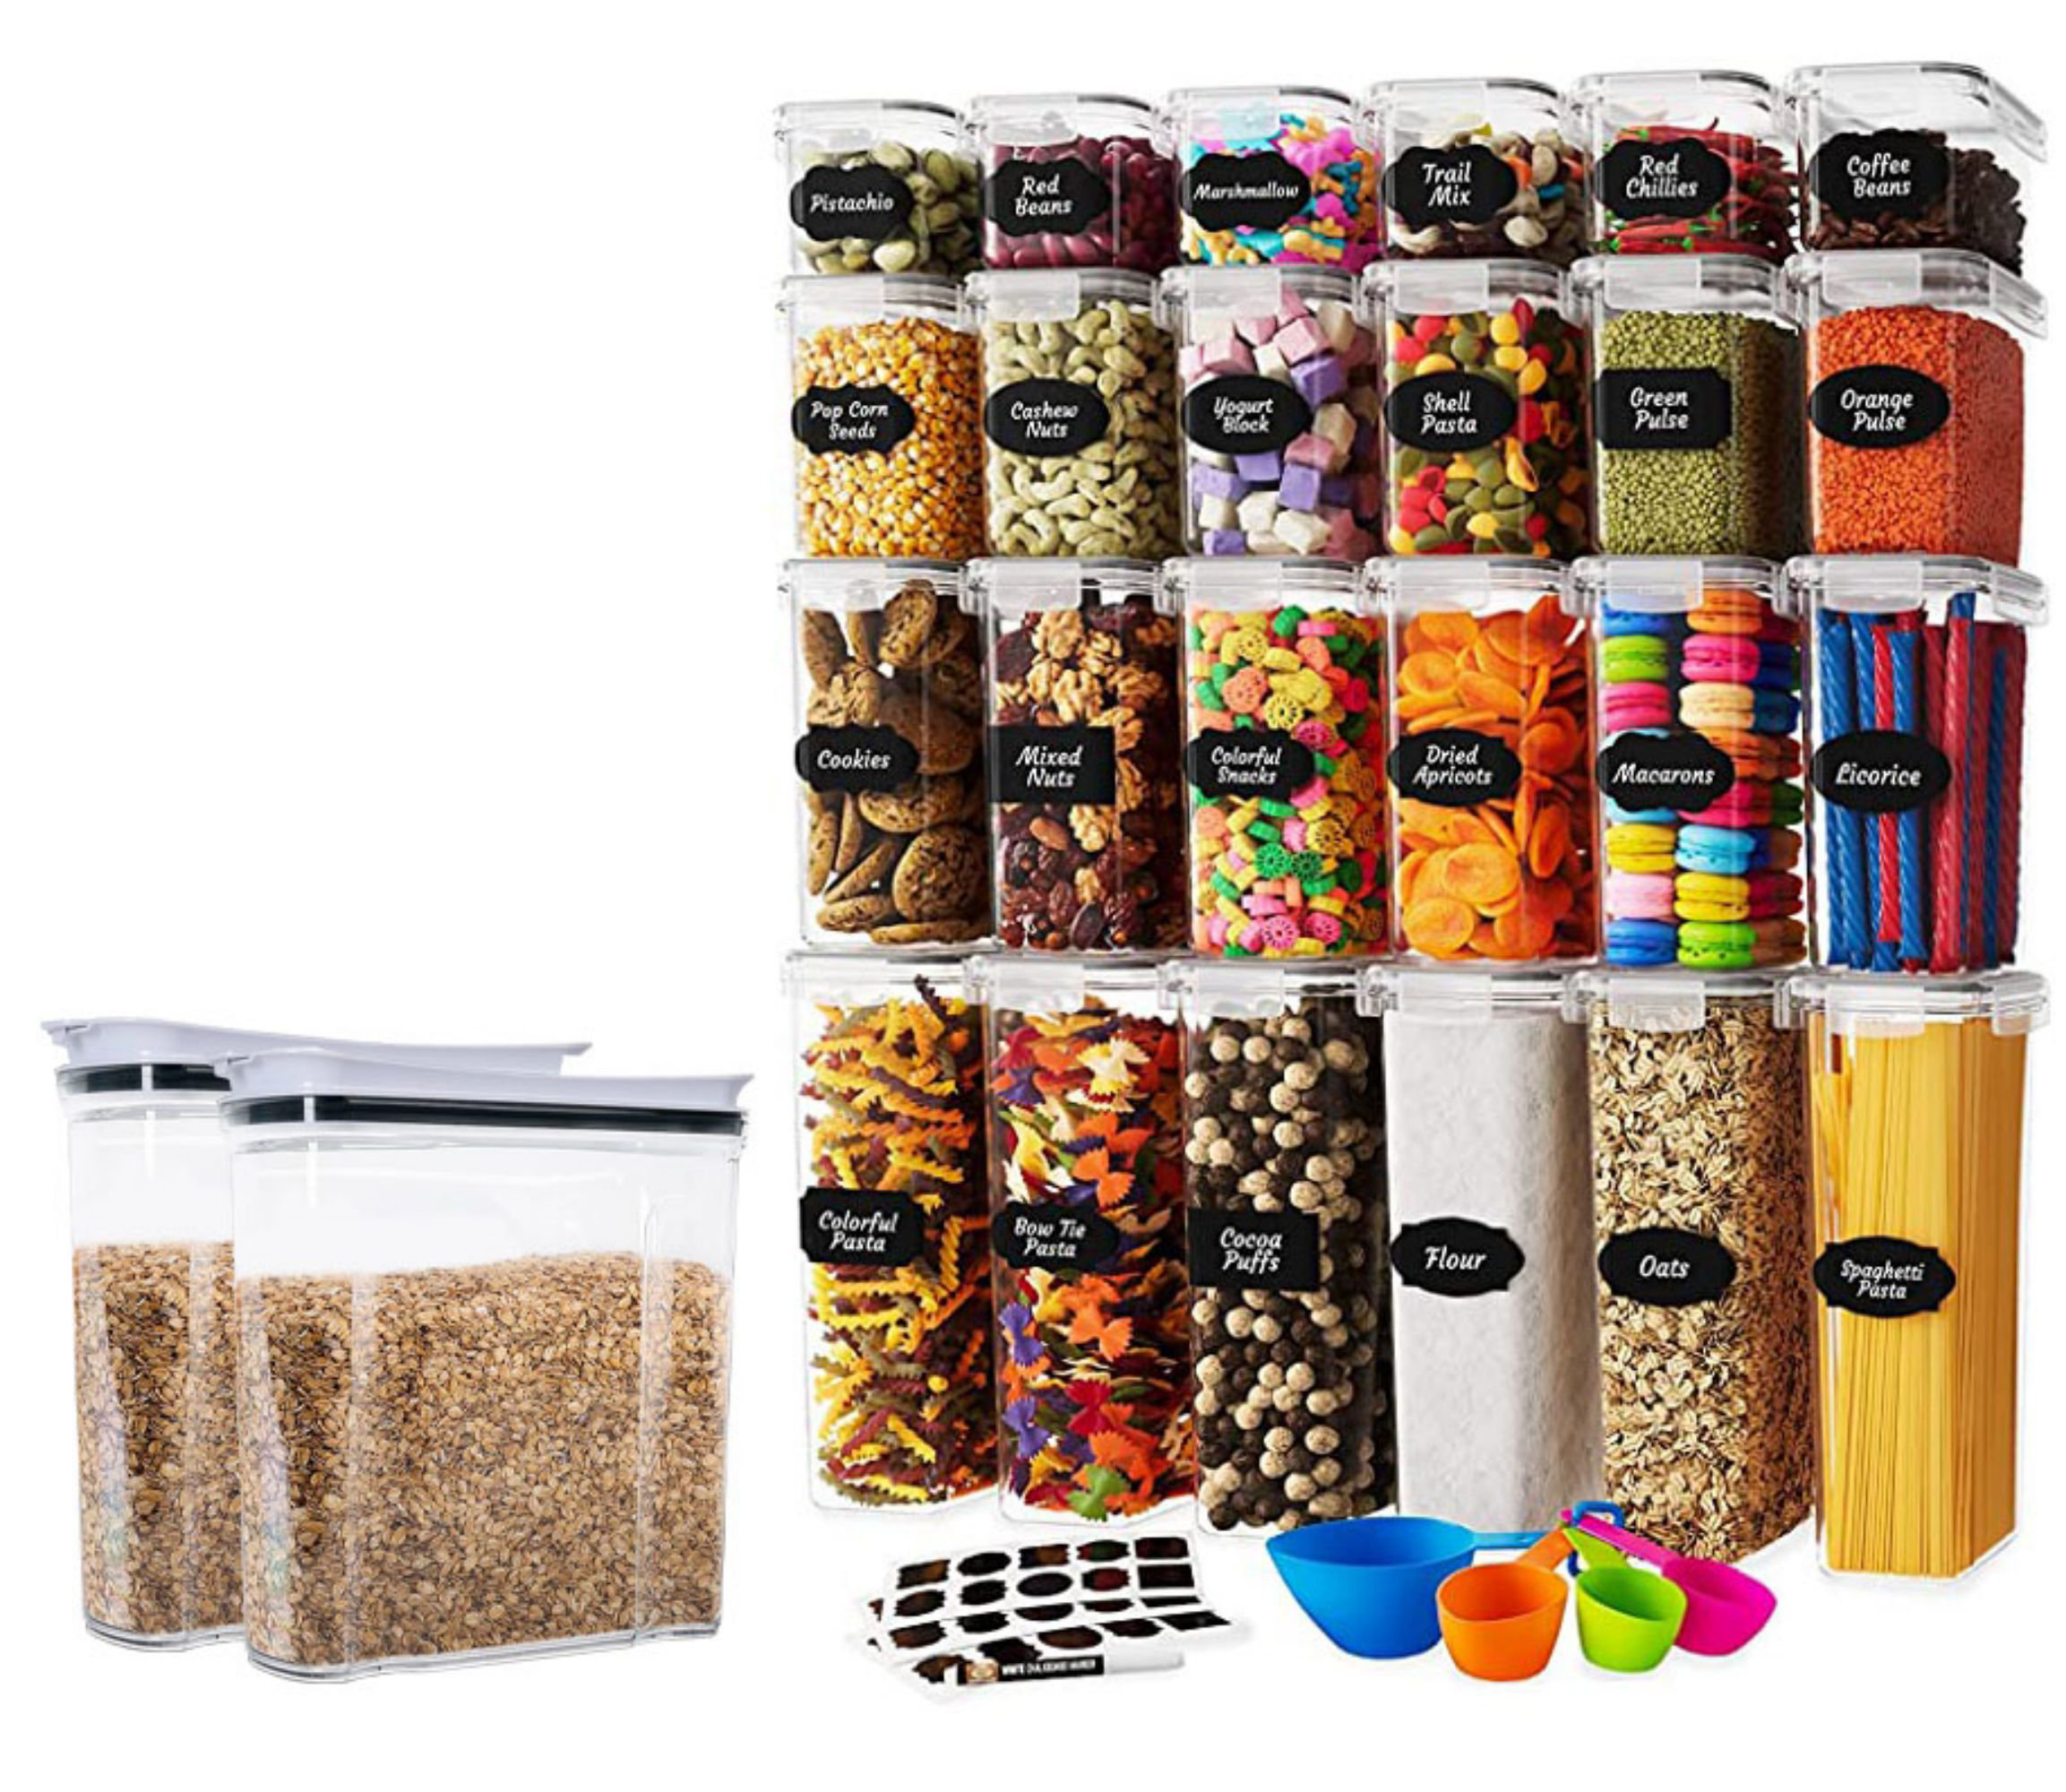 Charlei 32 Container Food Storage Set Prep & Savour